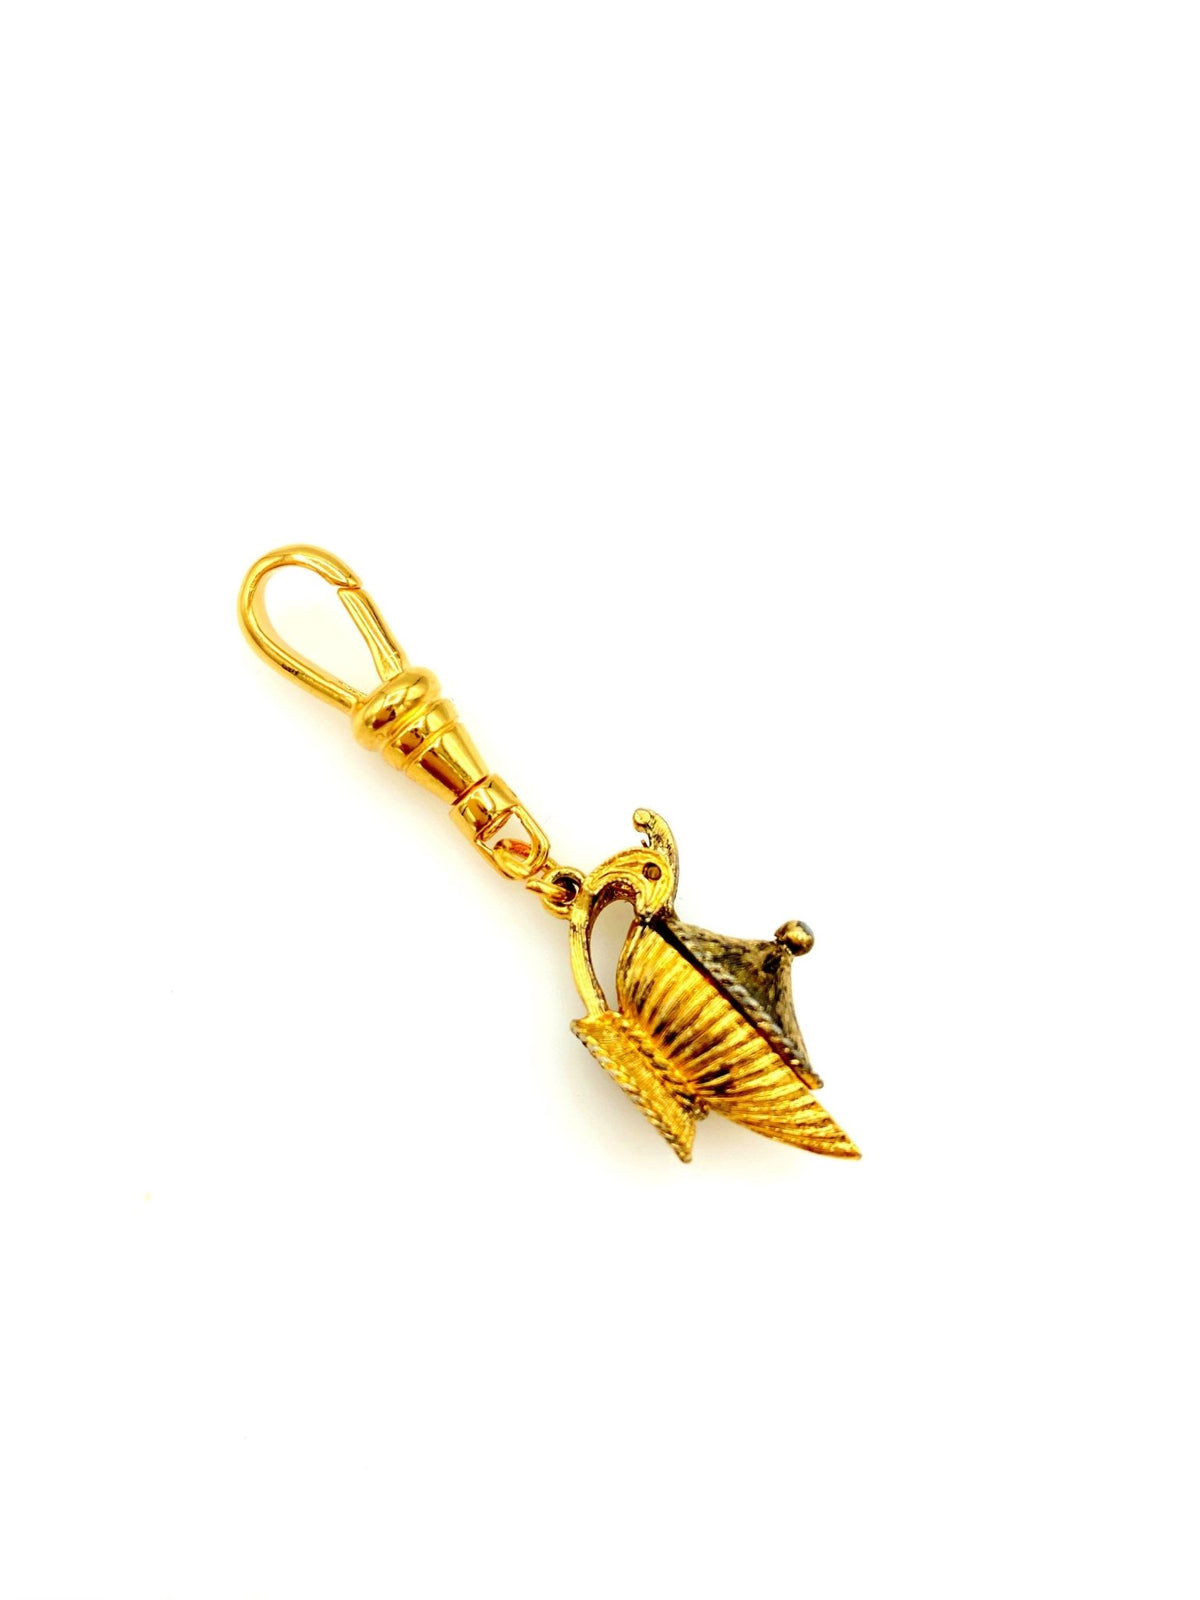 Gold Genie Lantern Charm - 24 Wishes Vintage Jewelry